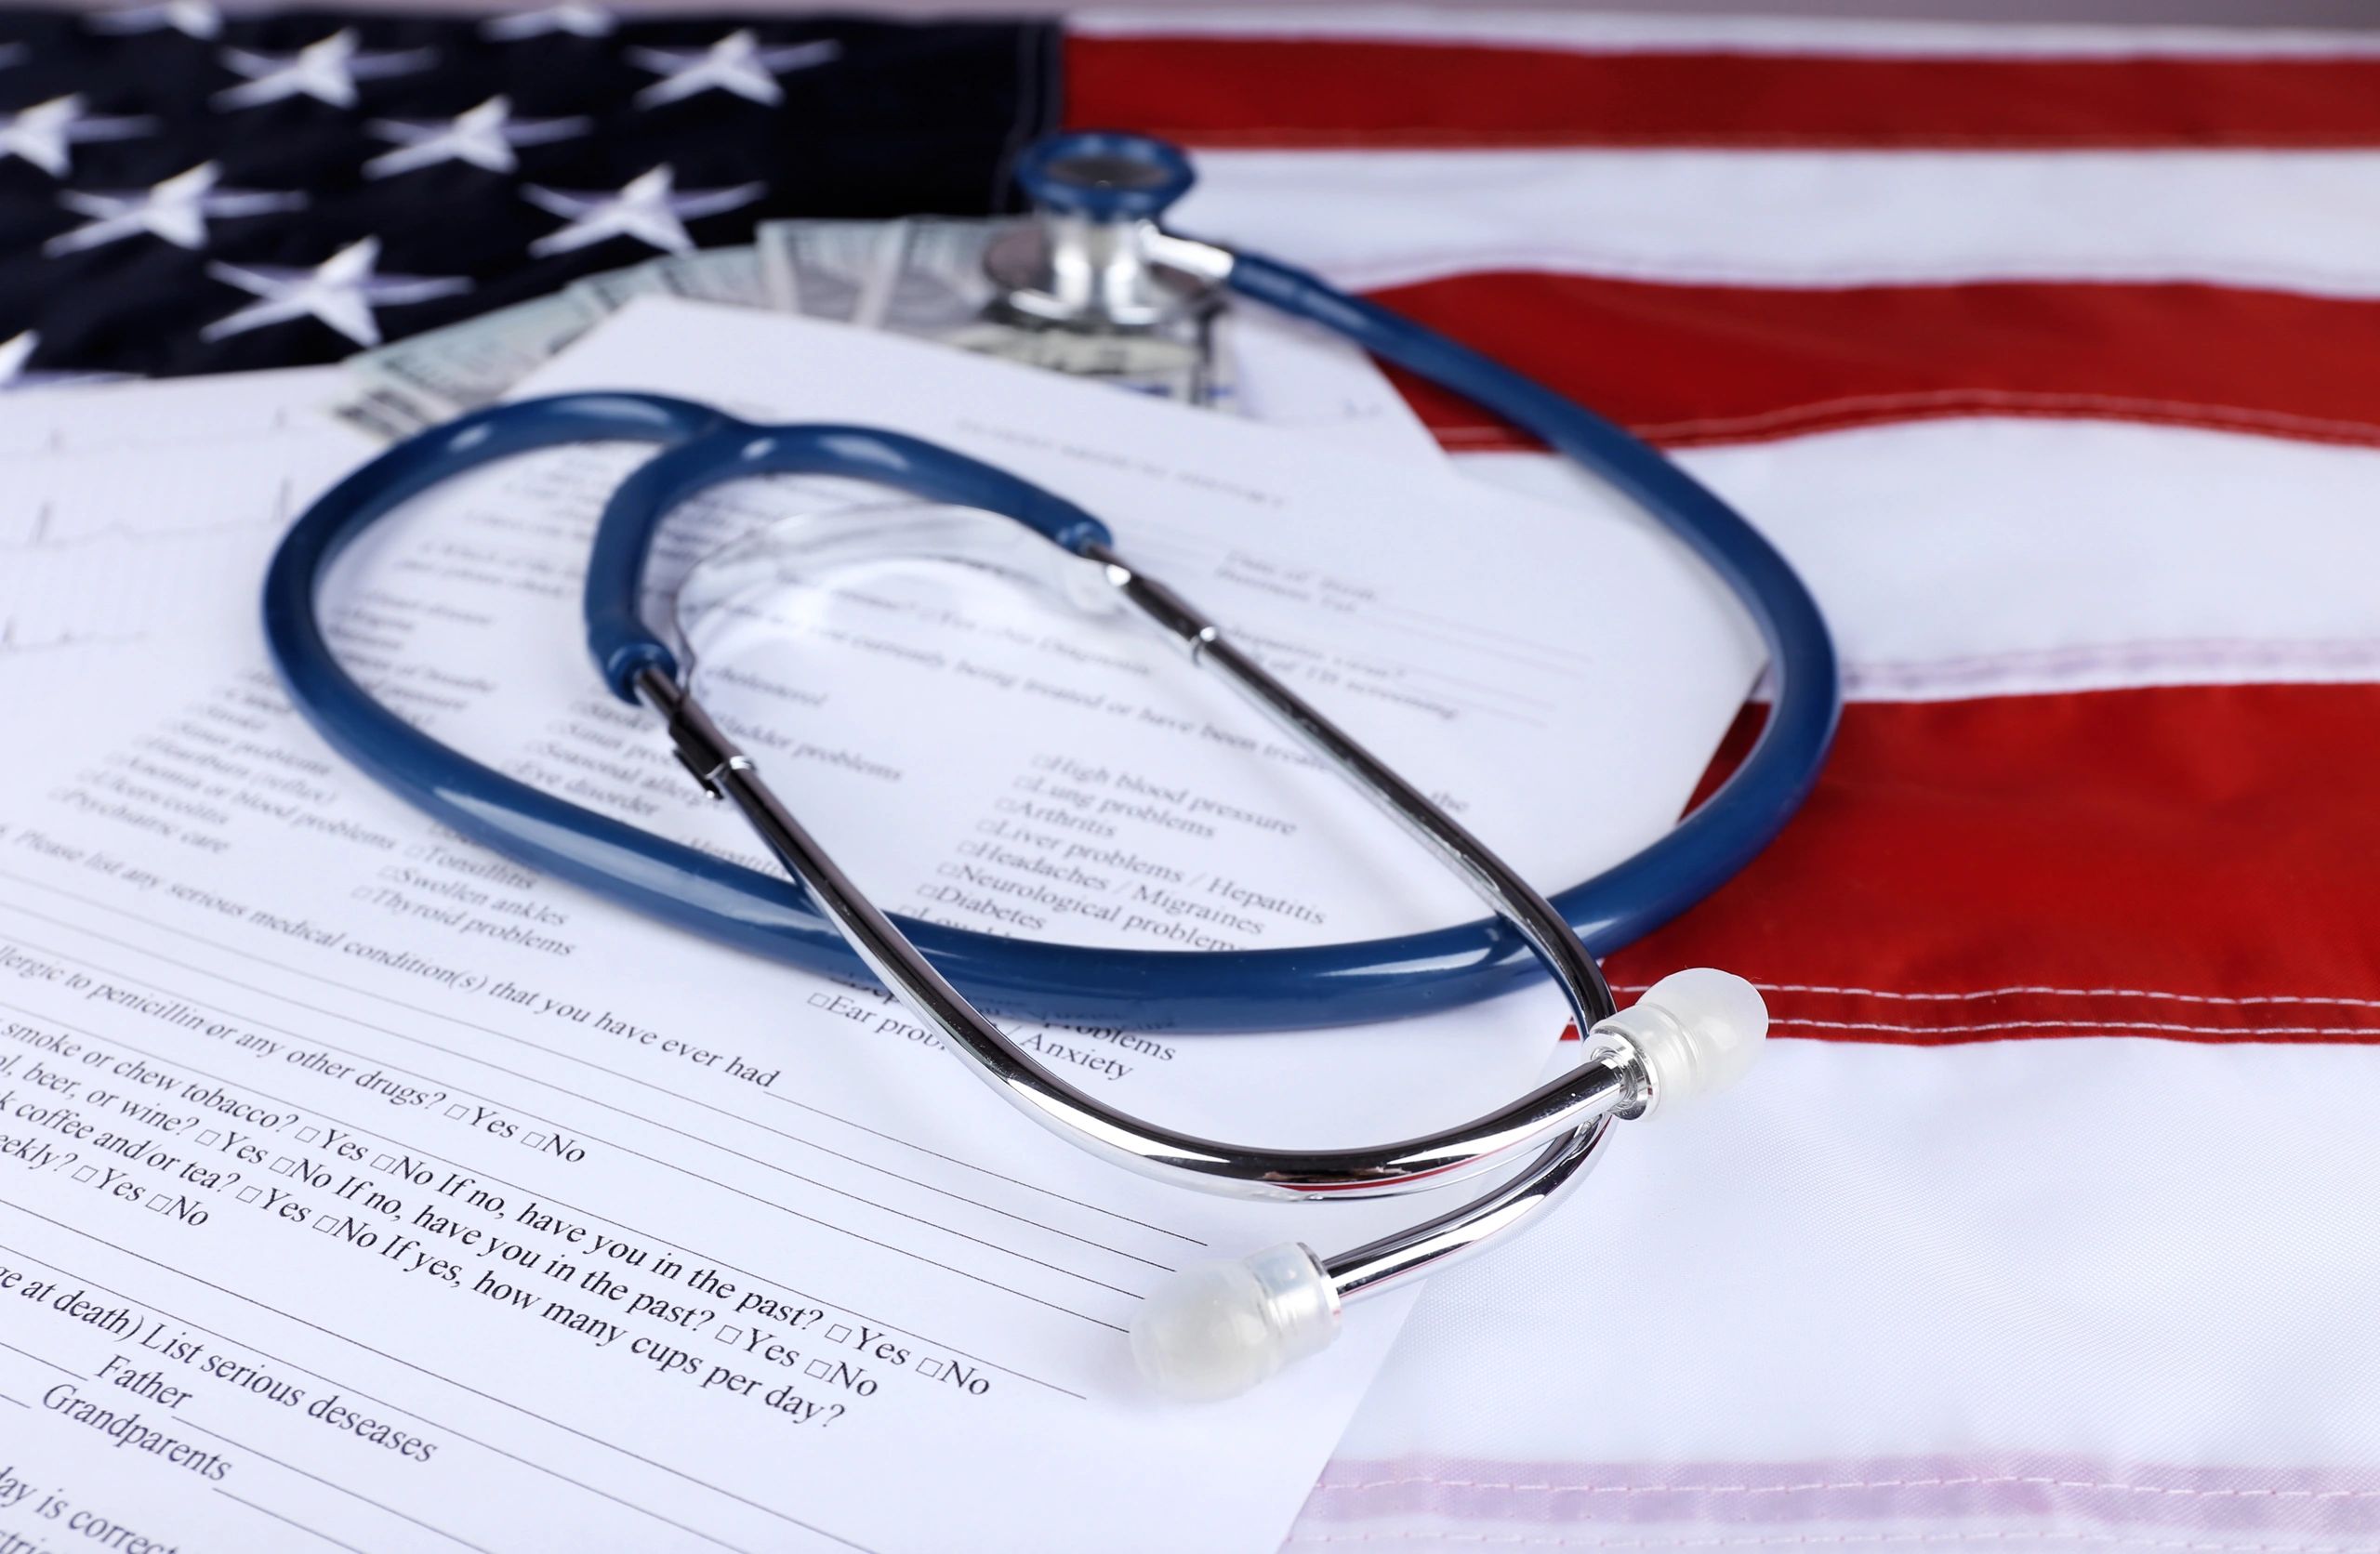 Examenes de Inmigracion Miami - Salud Medicos - Vida en America, la guia  del Inmigrante